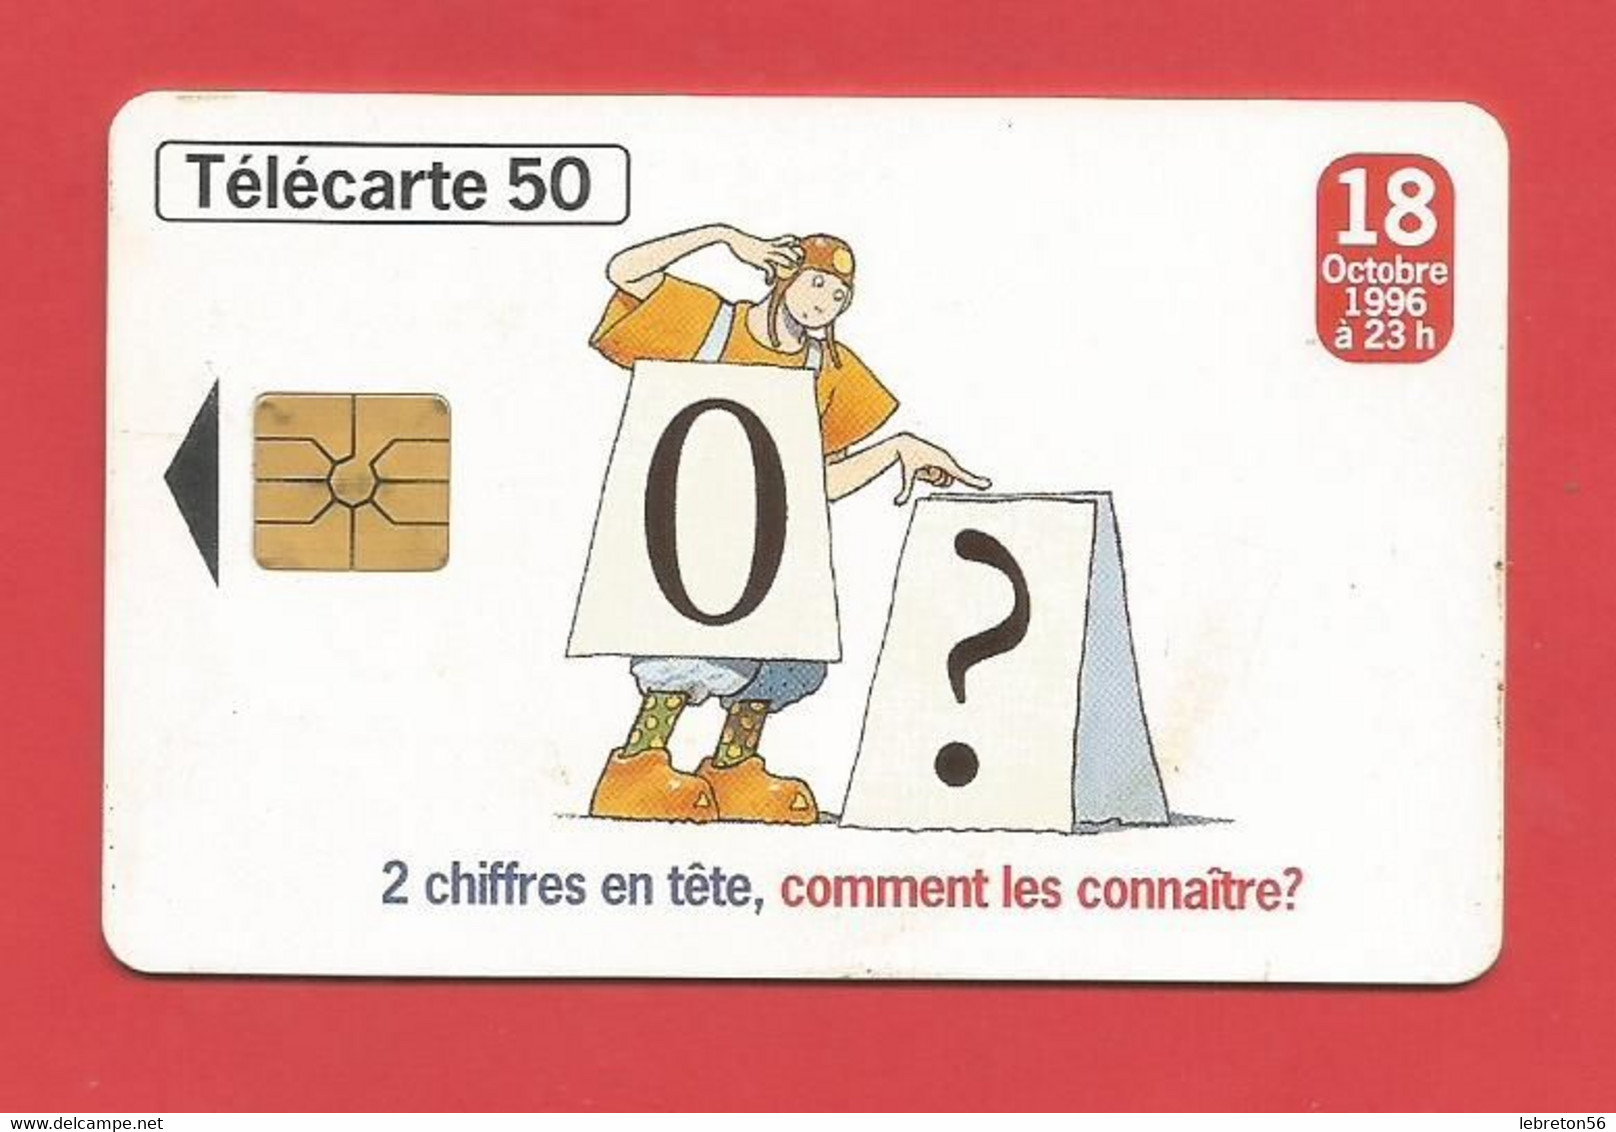 TELECARTE 50  U TIRAGE 2000 000 EX. France Télécom Numérotation à 10 Chiffres ---- X 2 Scan - Opérateurs Télécom